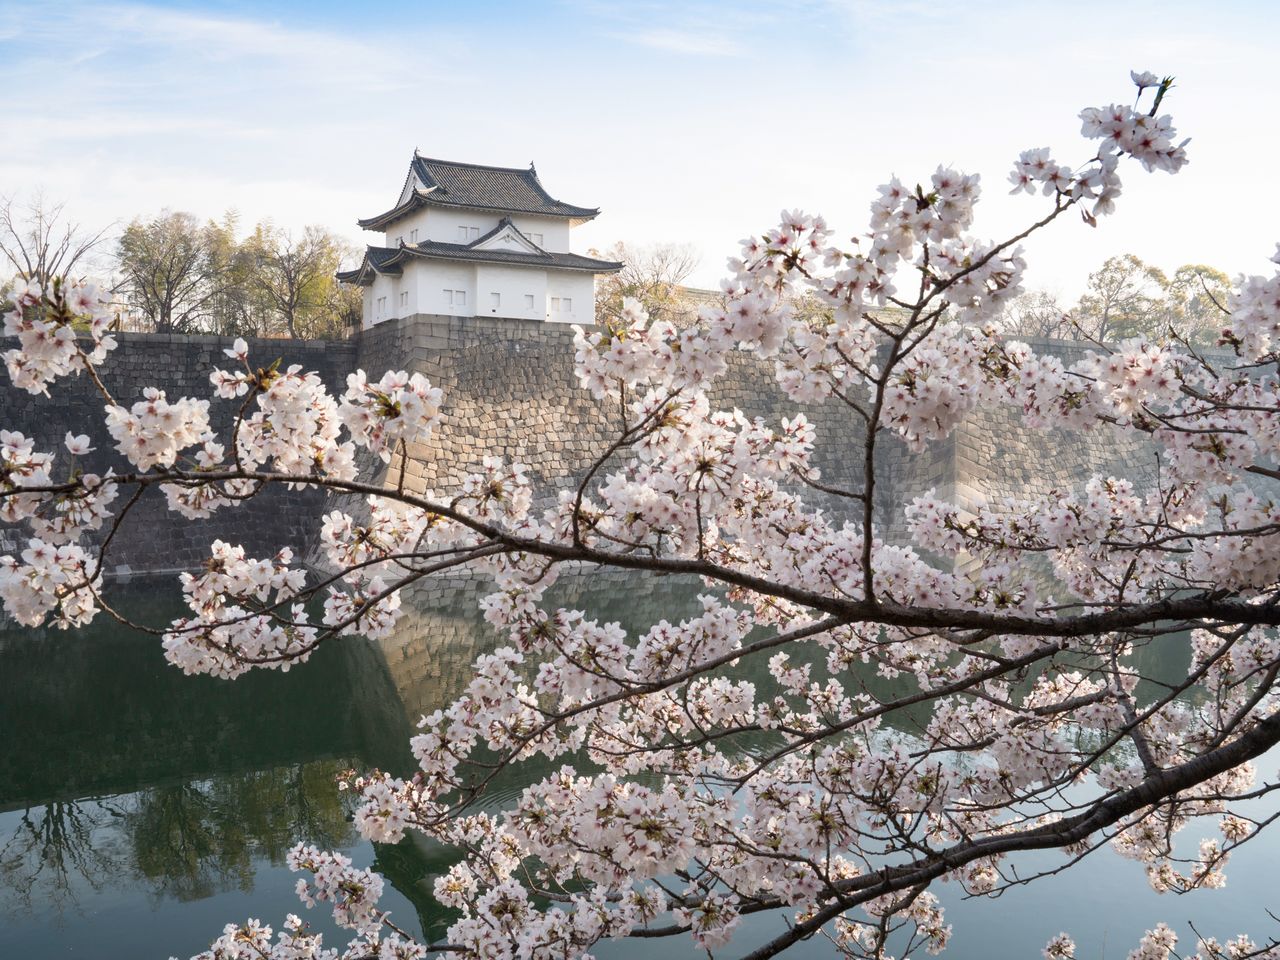 堀端に咲くソメイヨシノ越しに見えるのが、重要文化財の六番櫓